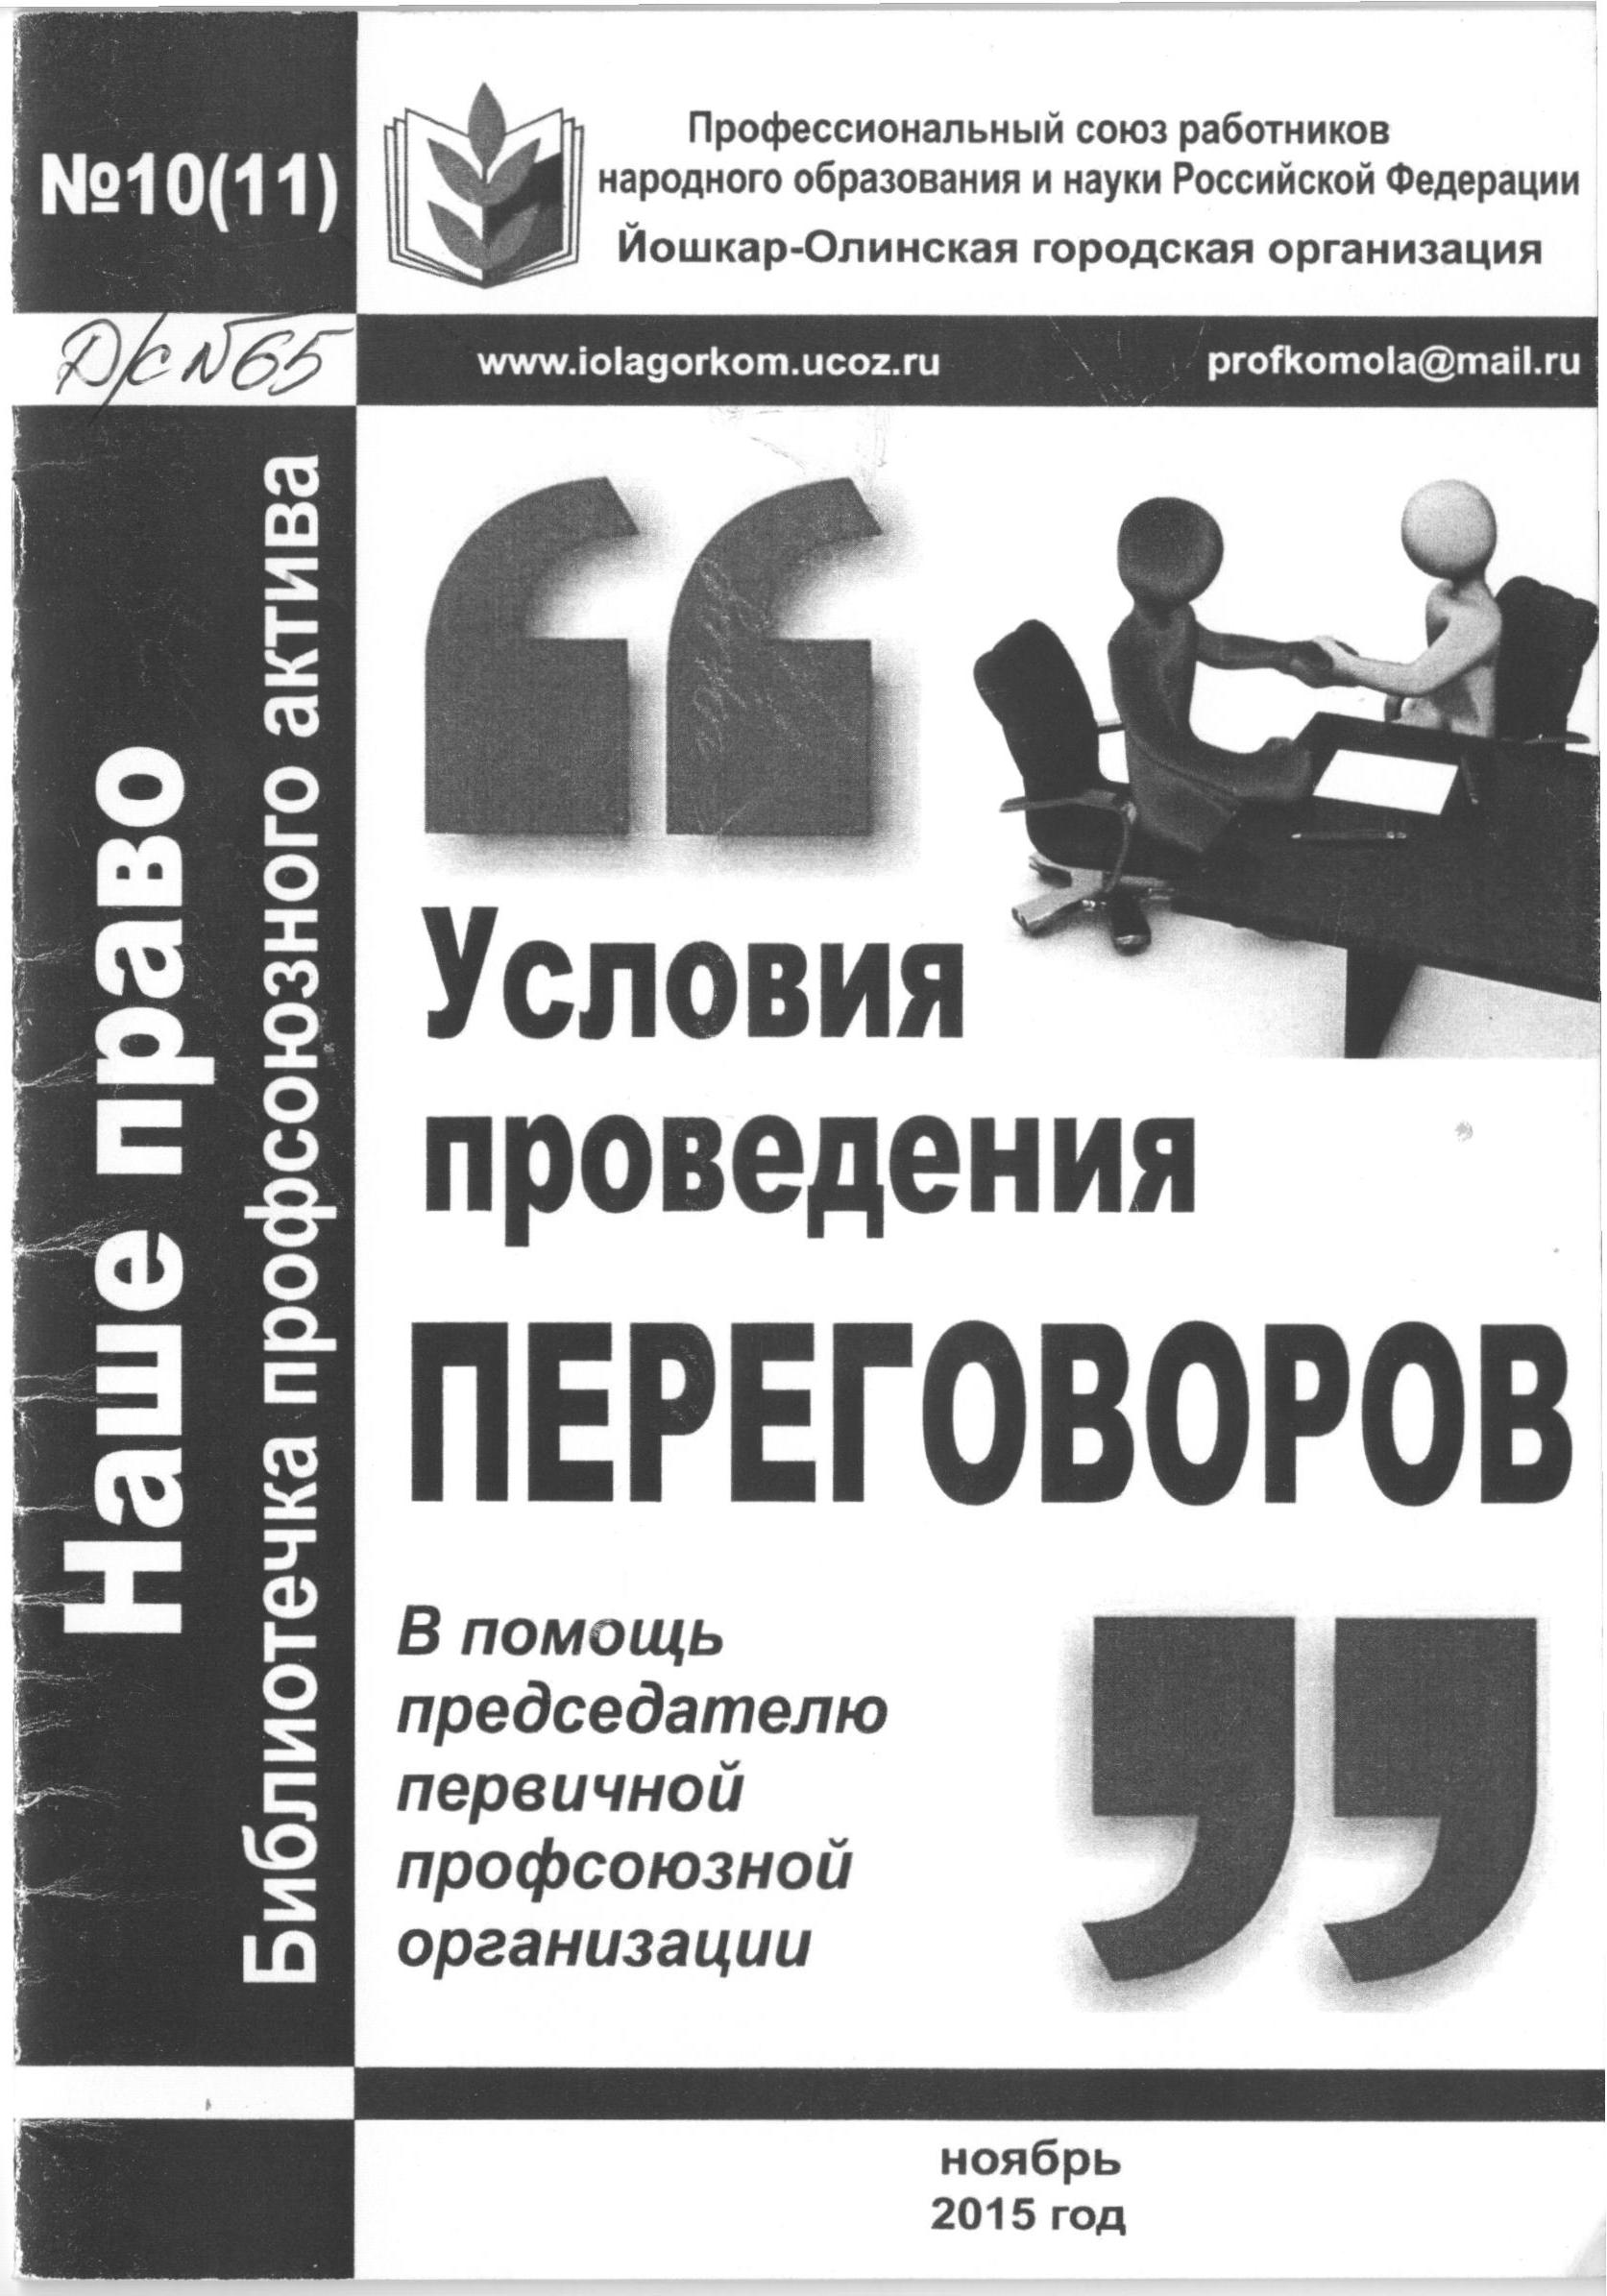 http://edu.mari.ru/mouo-yoshkarola/dou65/DocLib25/профком/публикации%202015.jpg